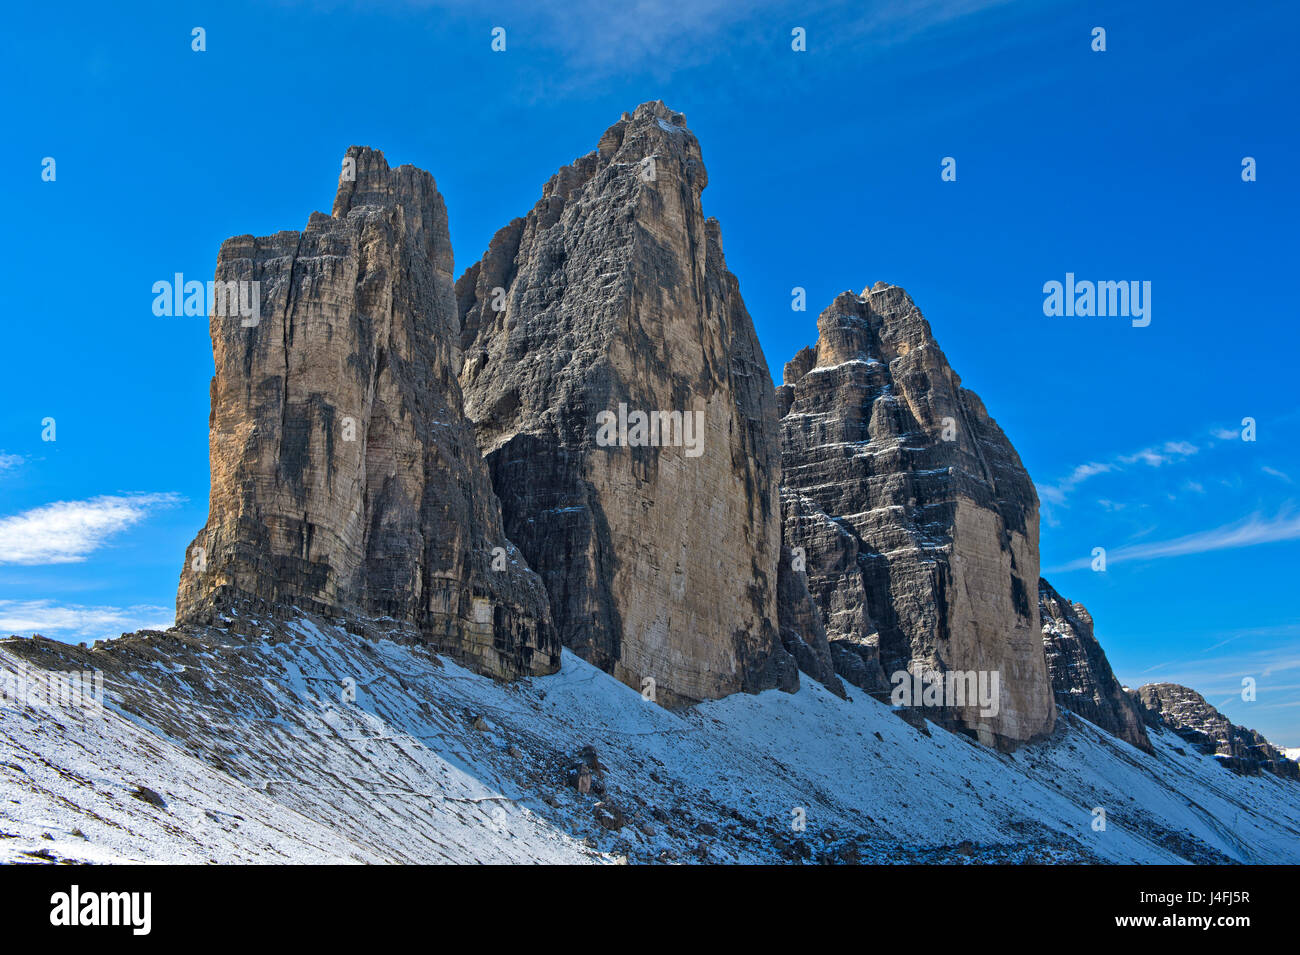 Inizio dell'inverno a Tre Cime montagne, le Tre Cime di Lavaredo, Drei Zinnen, Dolomiti di Sesto, Alto Adige, Trentino Alto Adige, Italia Foto Stock